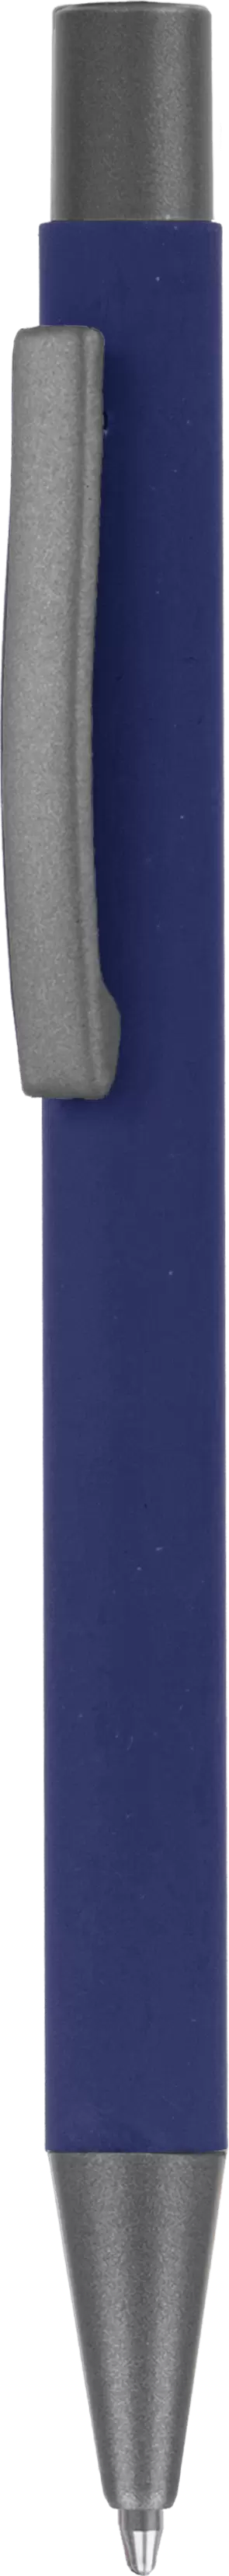 Ручка MAX SOFT TITAN Темно-синяя 1110.14